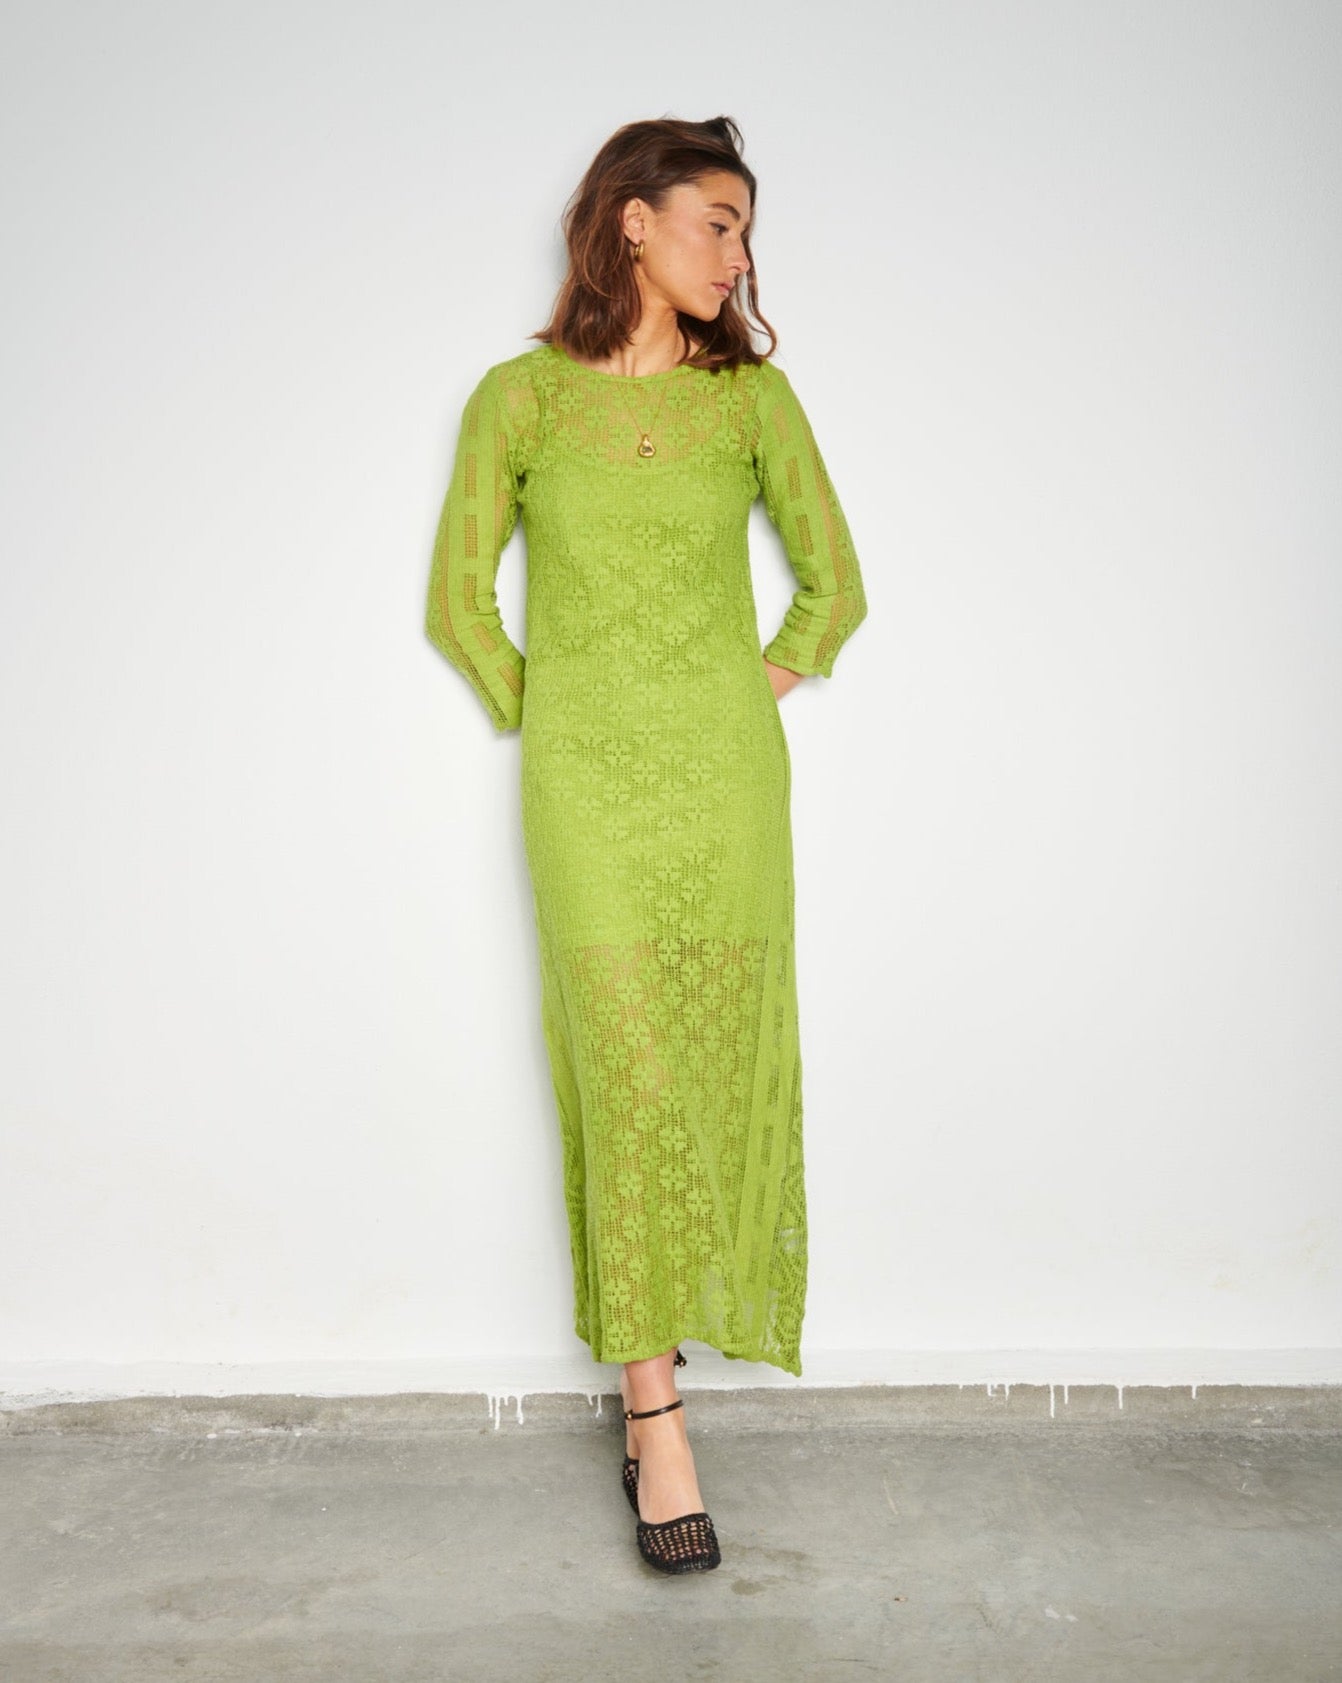 Crochet-looking Beach Dress in green